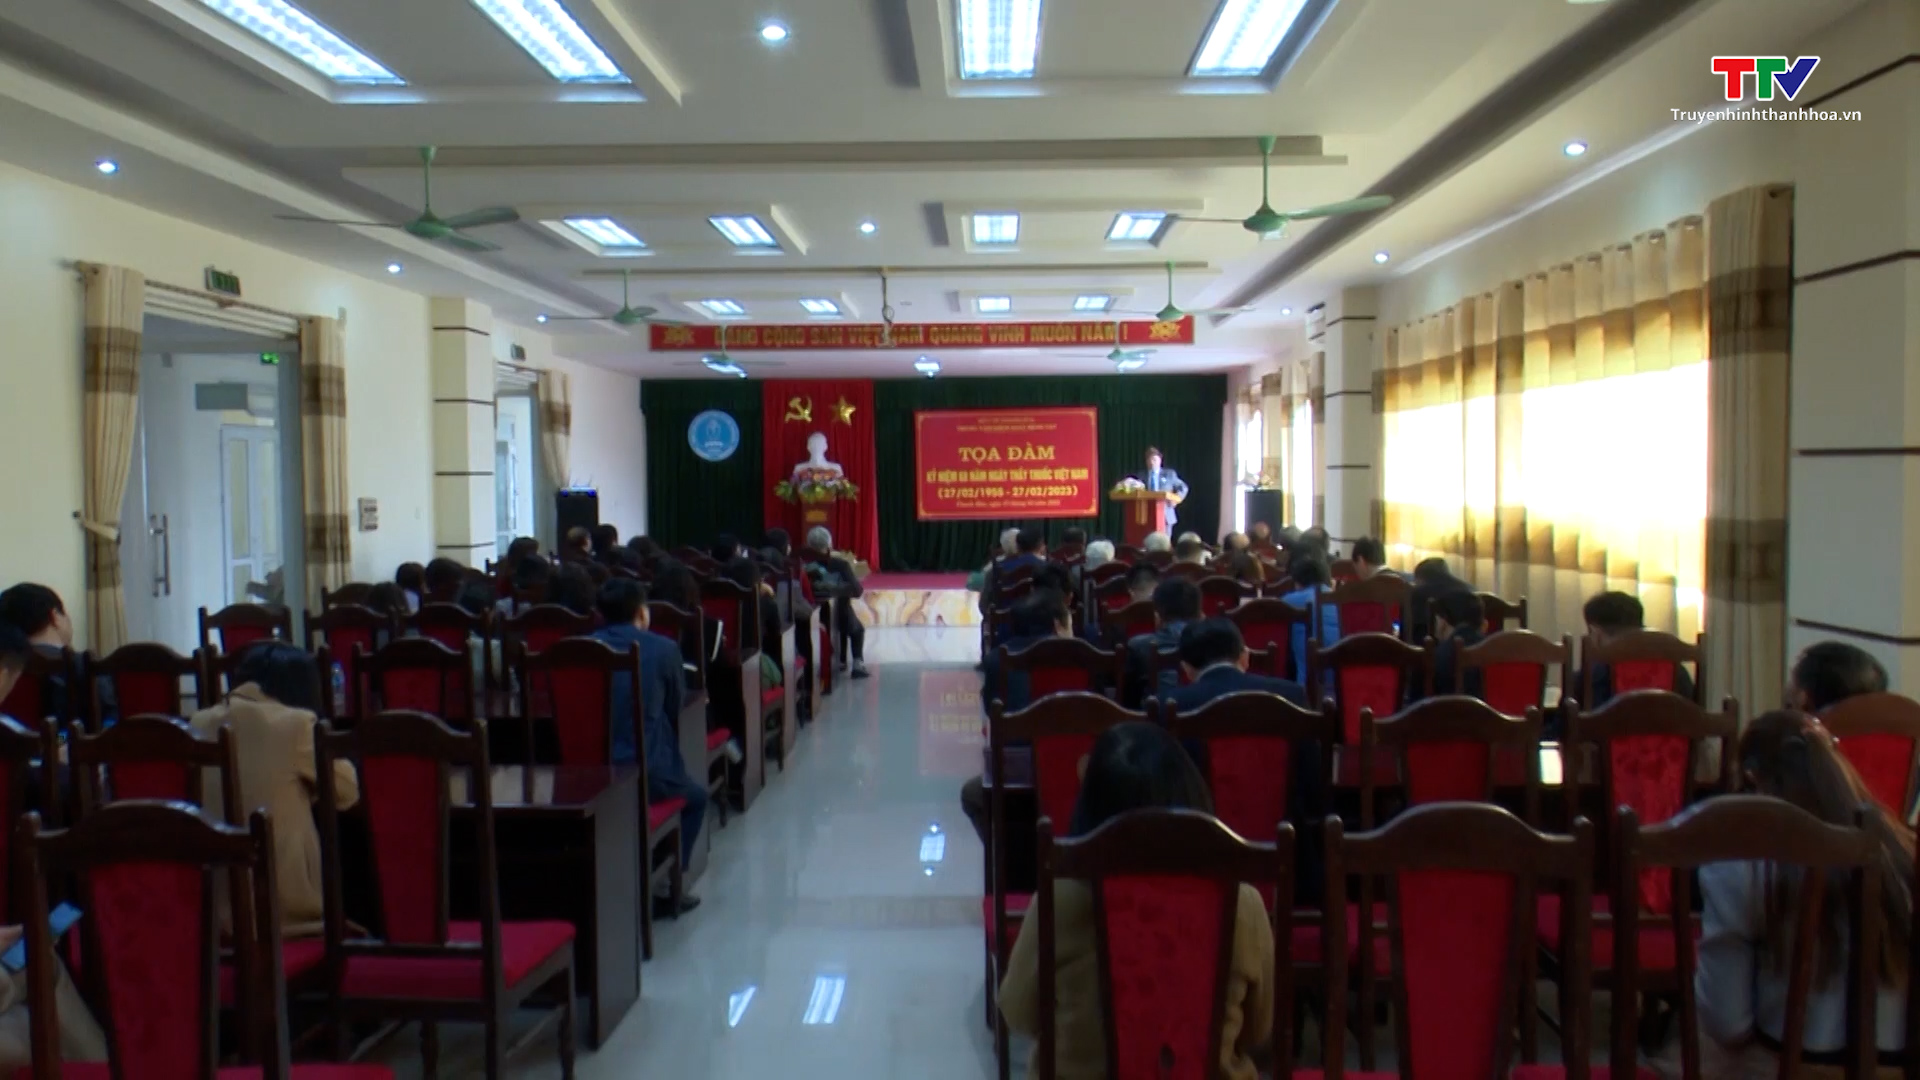 Trung tâm kiểm soát bệnh tật Thanh Hóa kỷ niệm ngày Thầy thuốc Việt Nam 27/2 - Ảnh 4.